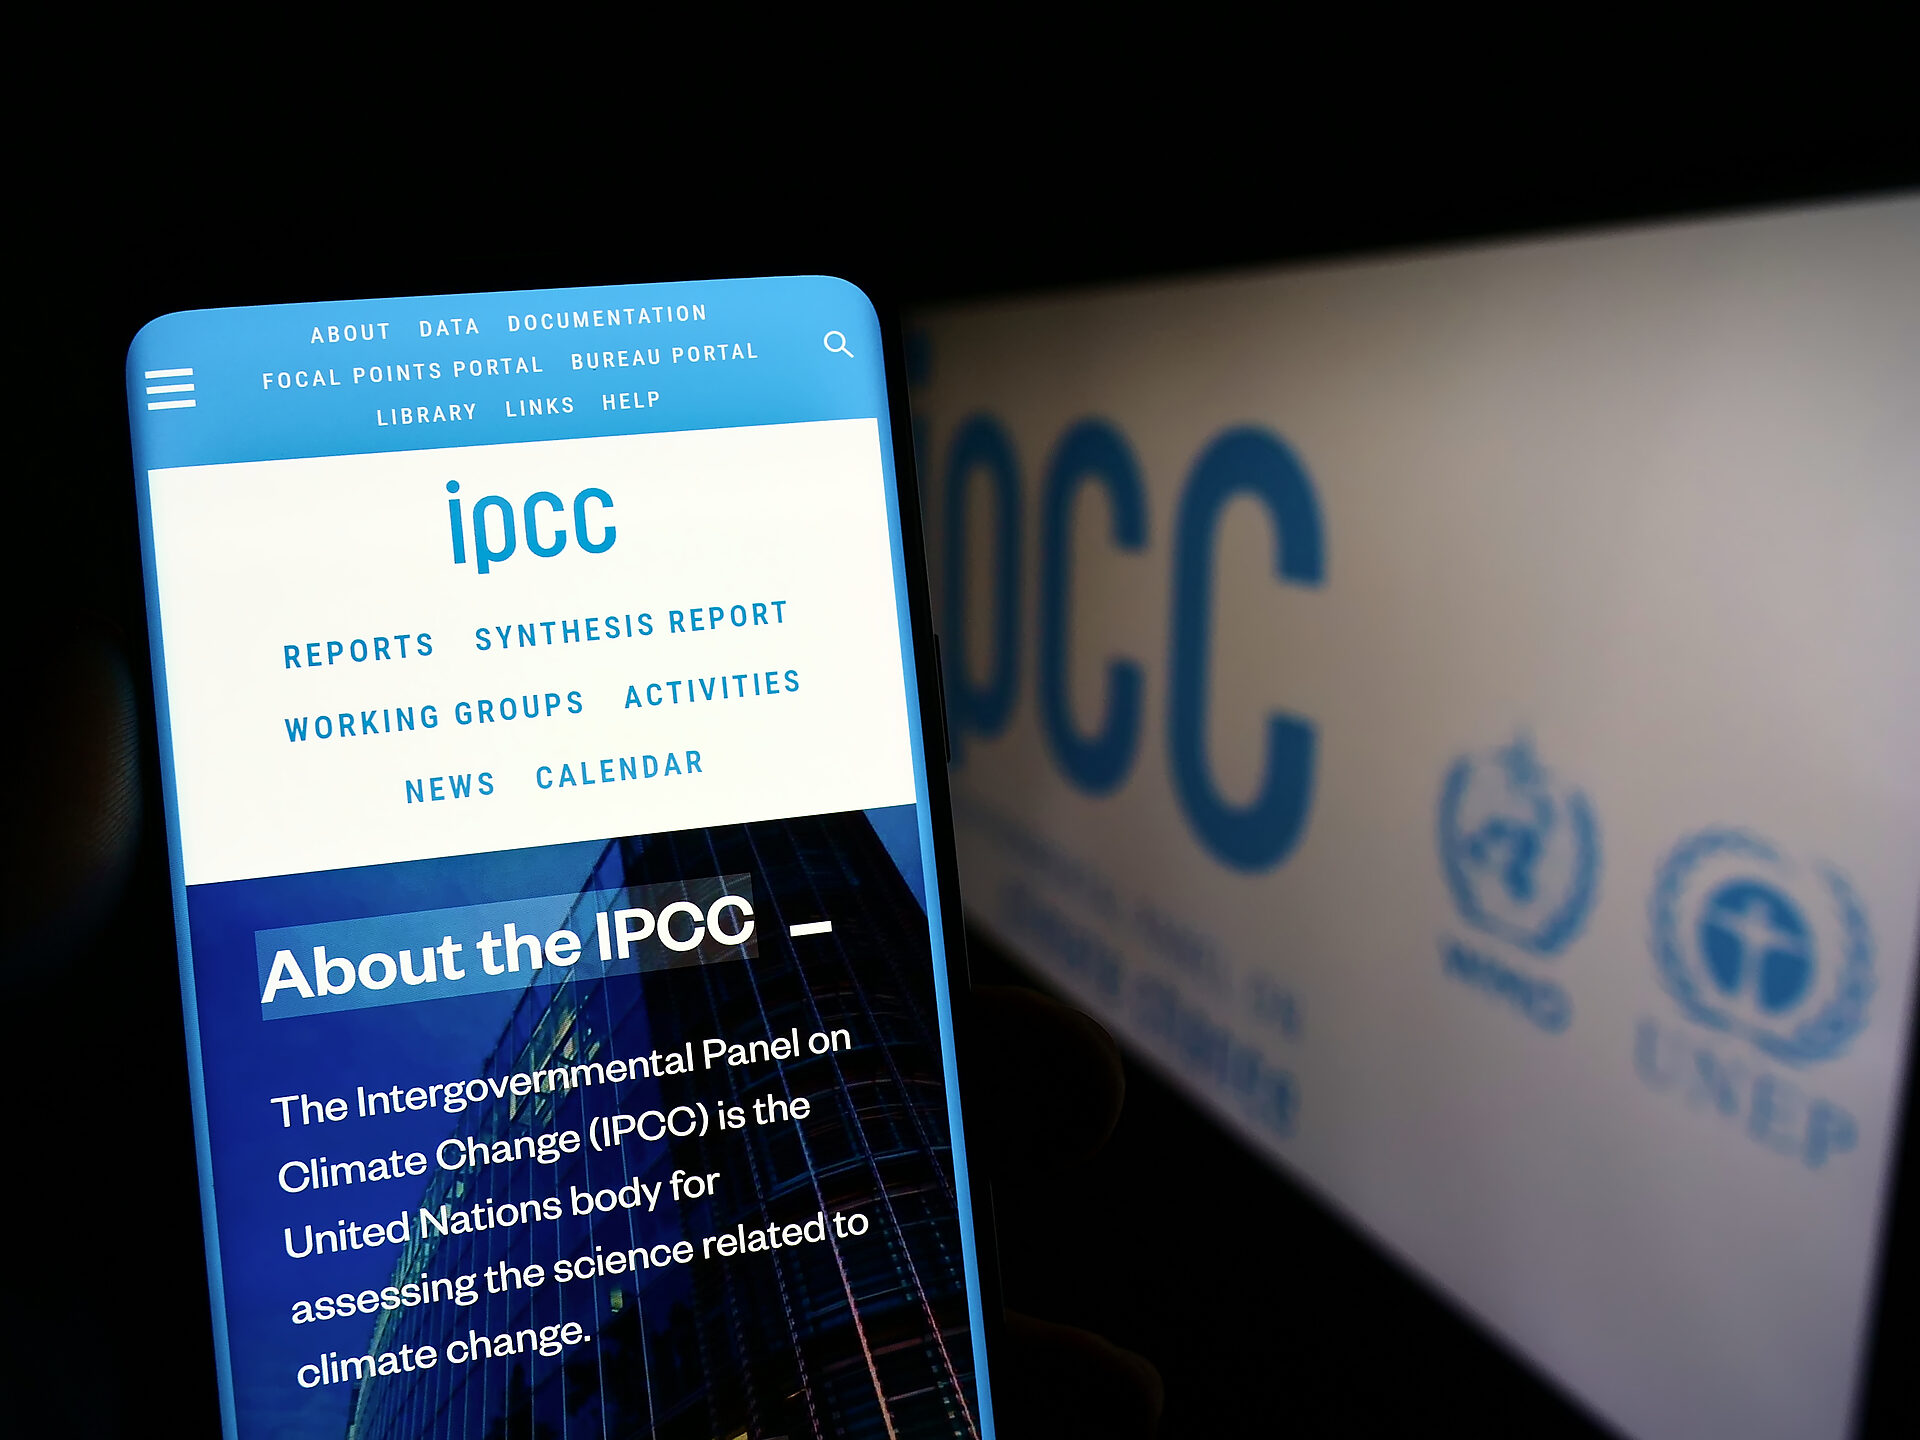 Der Intergovernmental Panel on Climate Change (IPCC) - oft als „Weltklimarat“ bezeichnet - ist eine Institution der Vereinten Nationen. In seinem Auftrag tragen Fachleute weltweit regelmäßig den aktuellen Kenntnisstand zum Klimawandel zusammen und bewerten ihn aus wissenschaftlicher Sicht, darunter auch Friederike Otto.